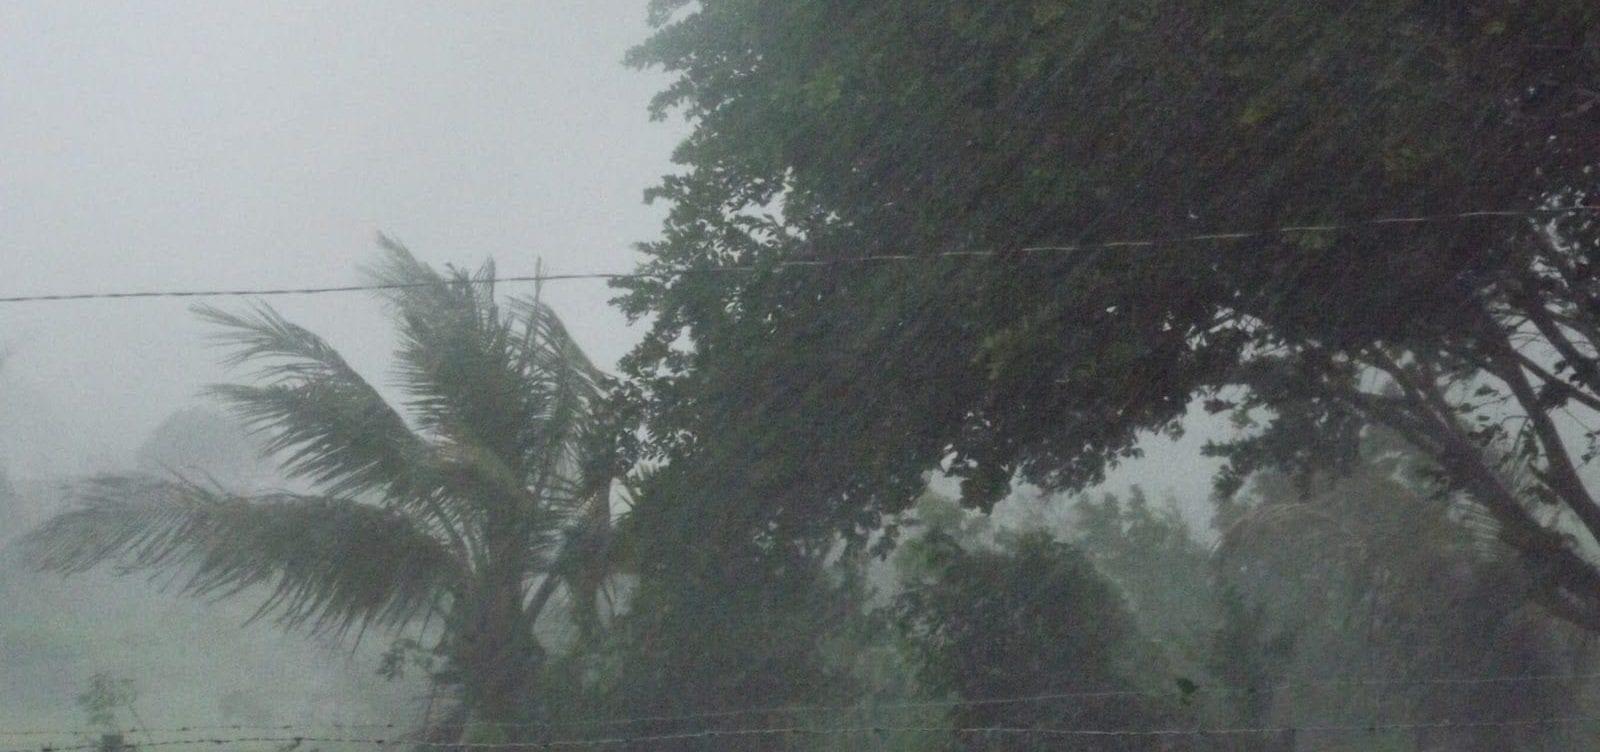 Governo Federal alerta para temporais em Goiás com ventos de até 100 km/h